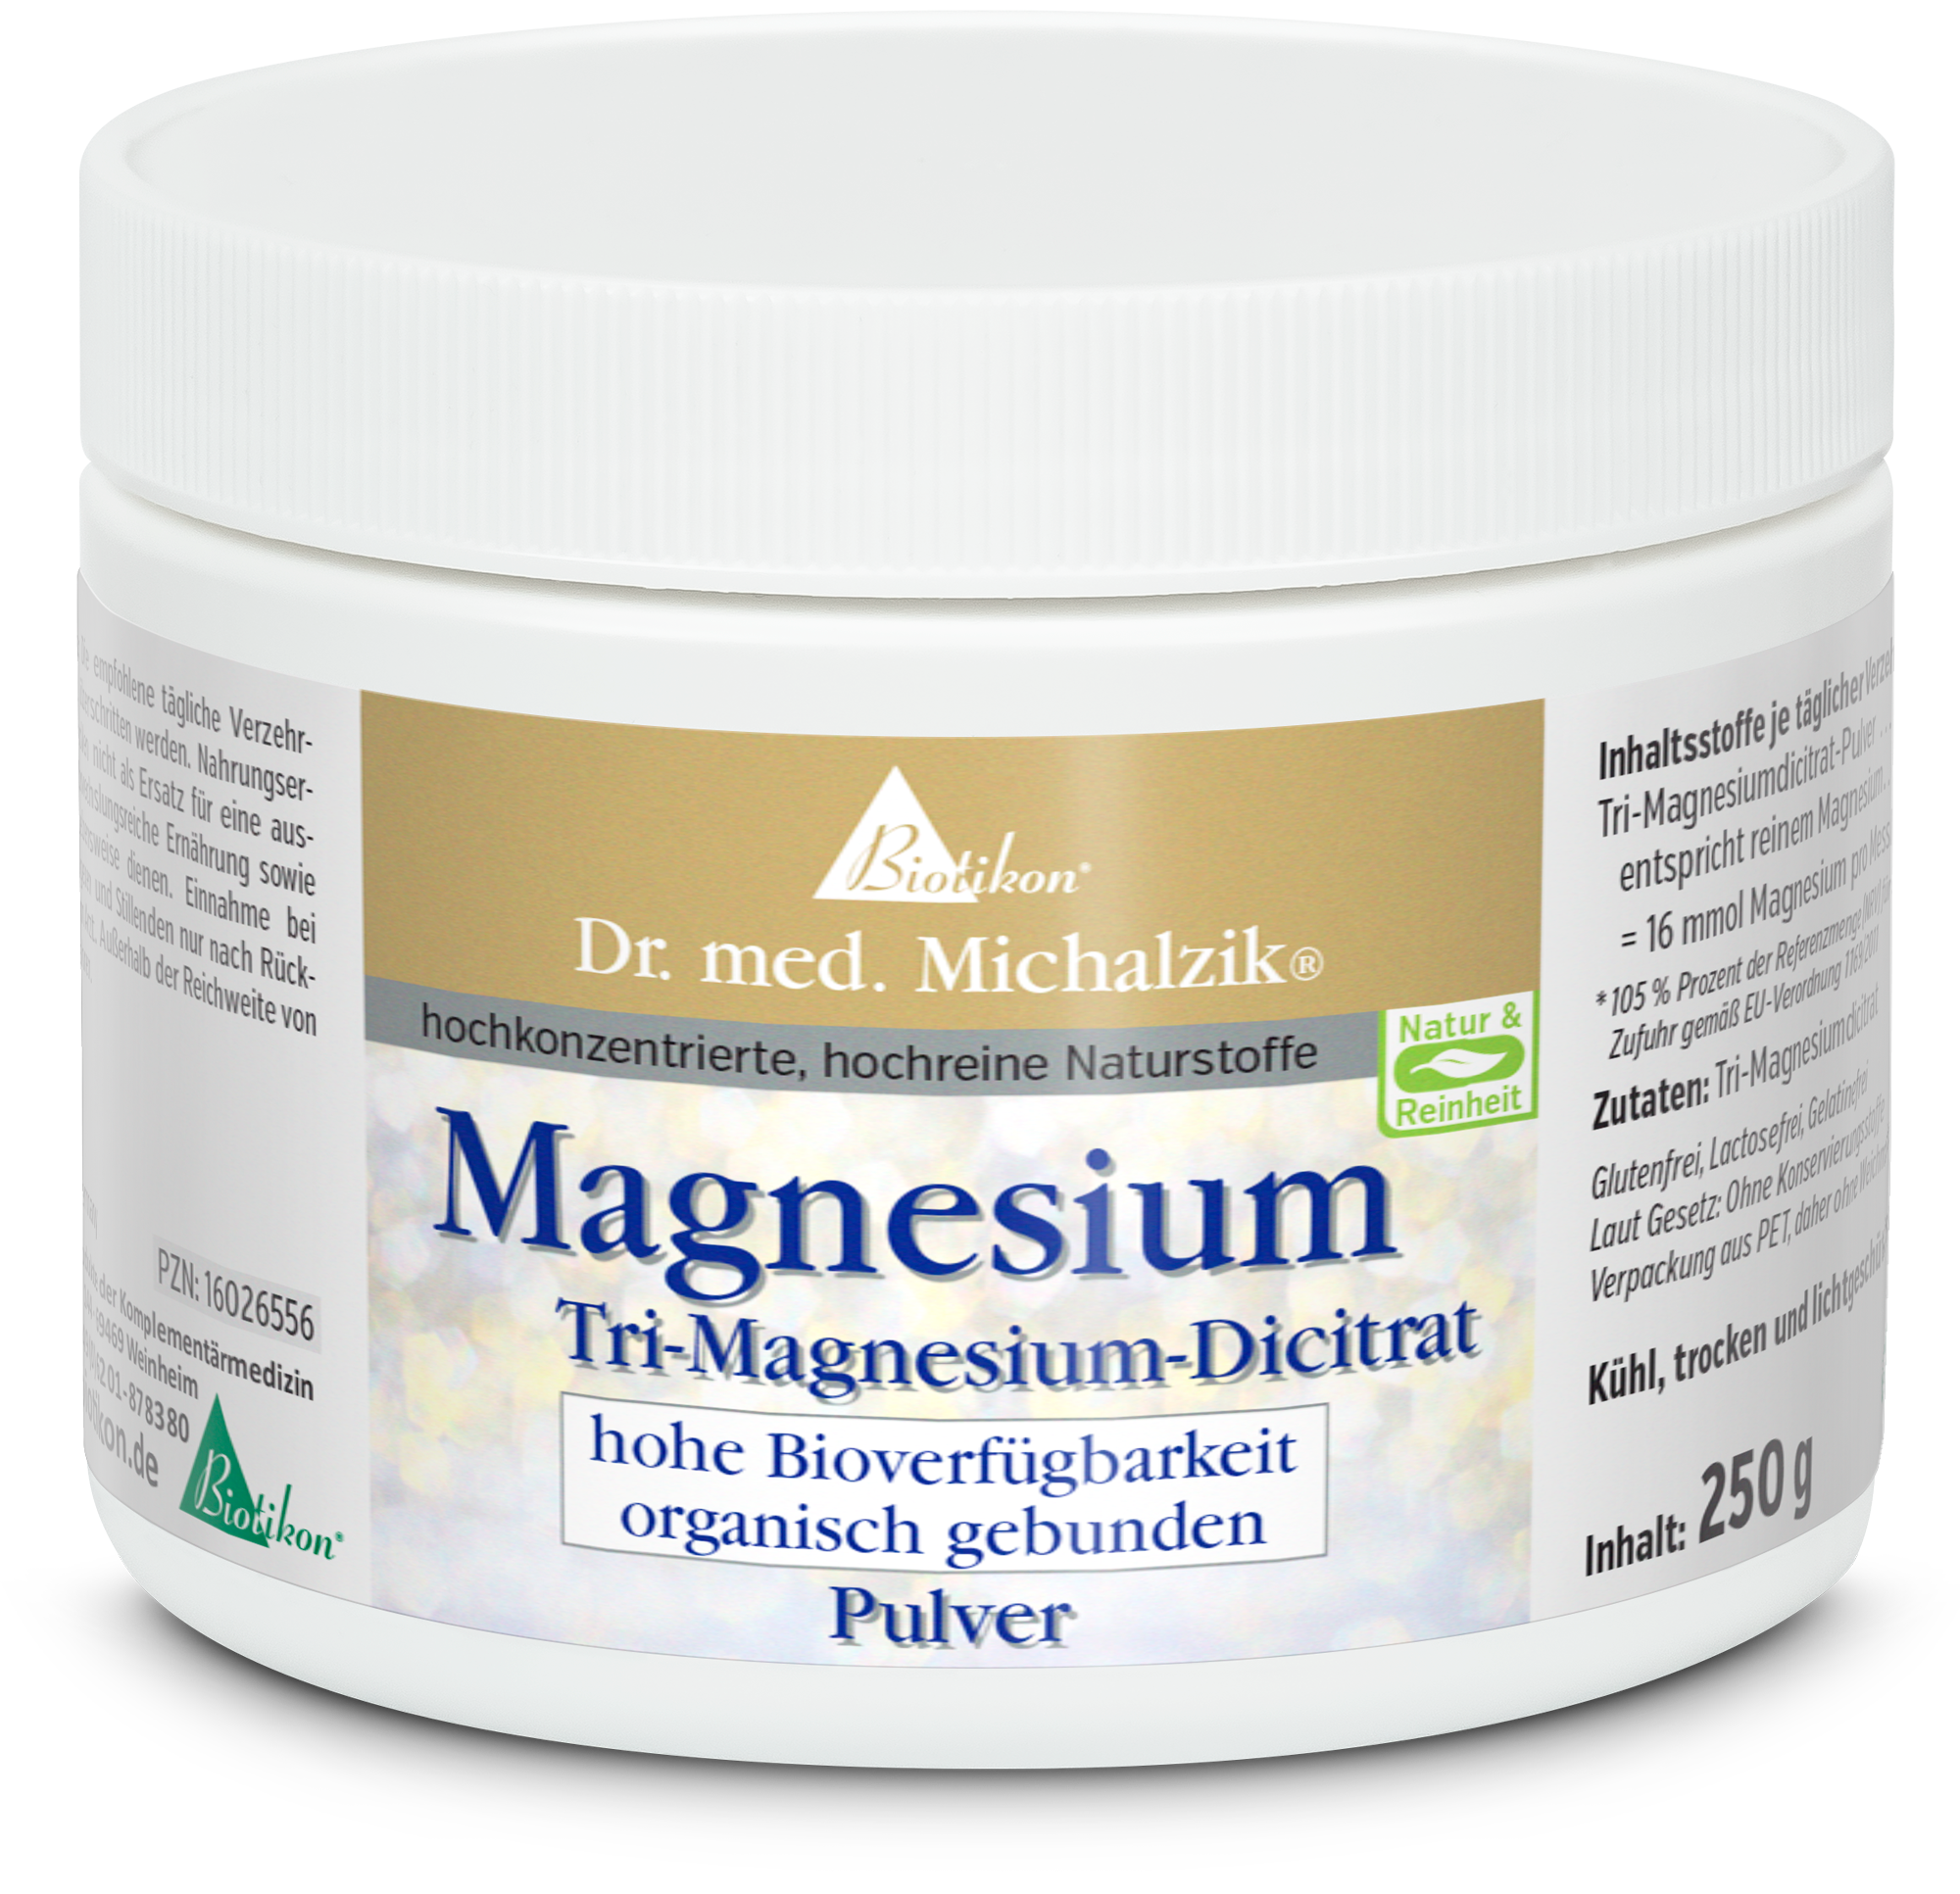 Magnesium Tri-Magnesium-Dicitrat Pulver